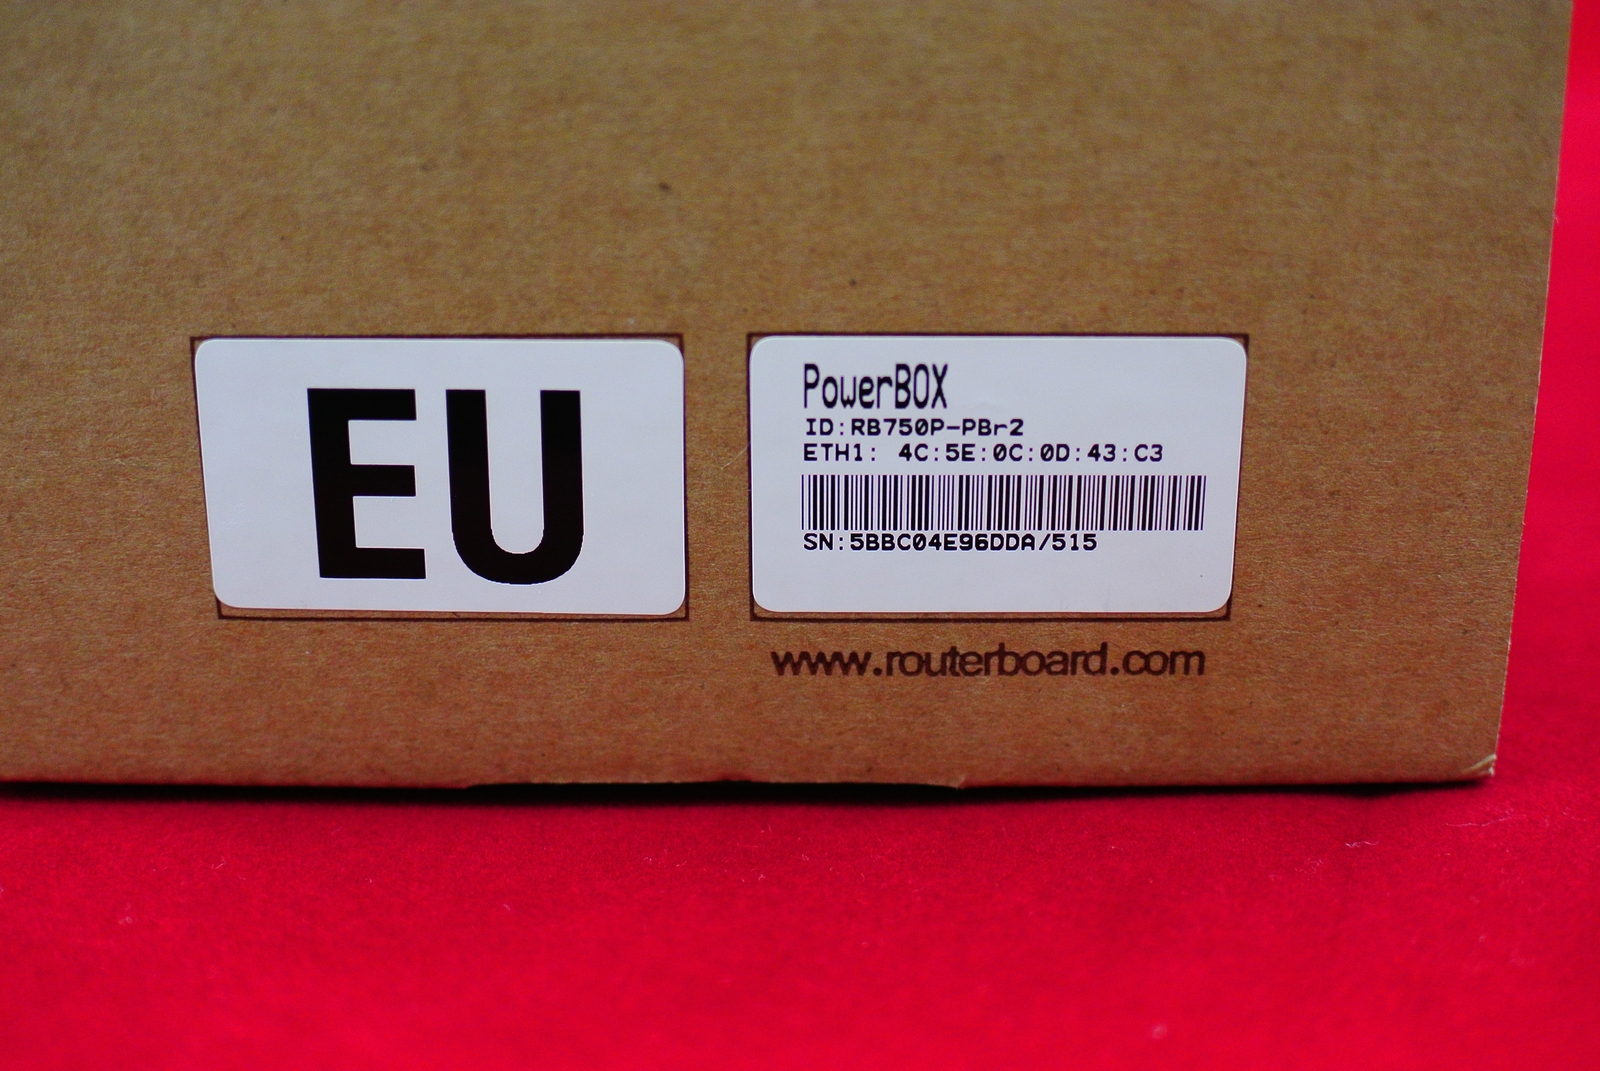 PowerBox маркировка на коробке